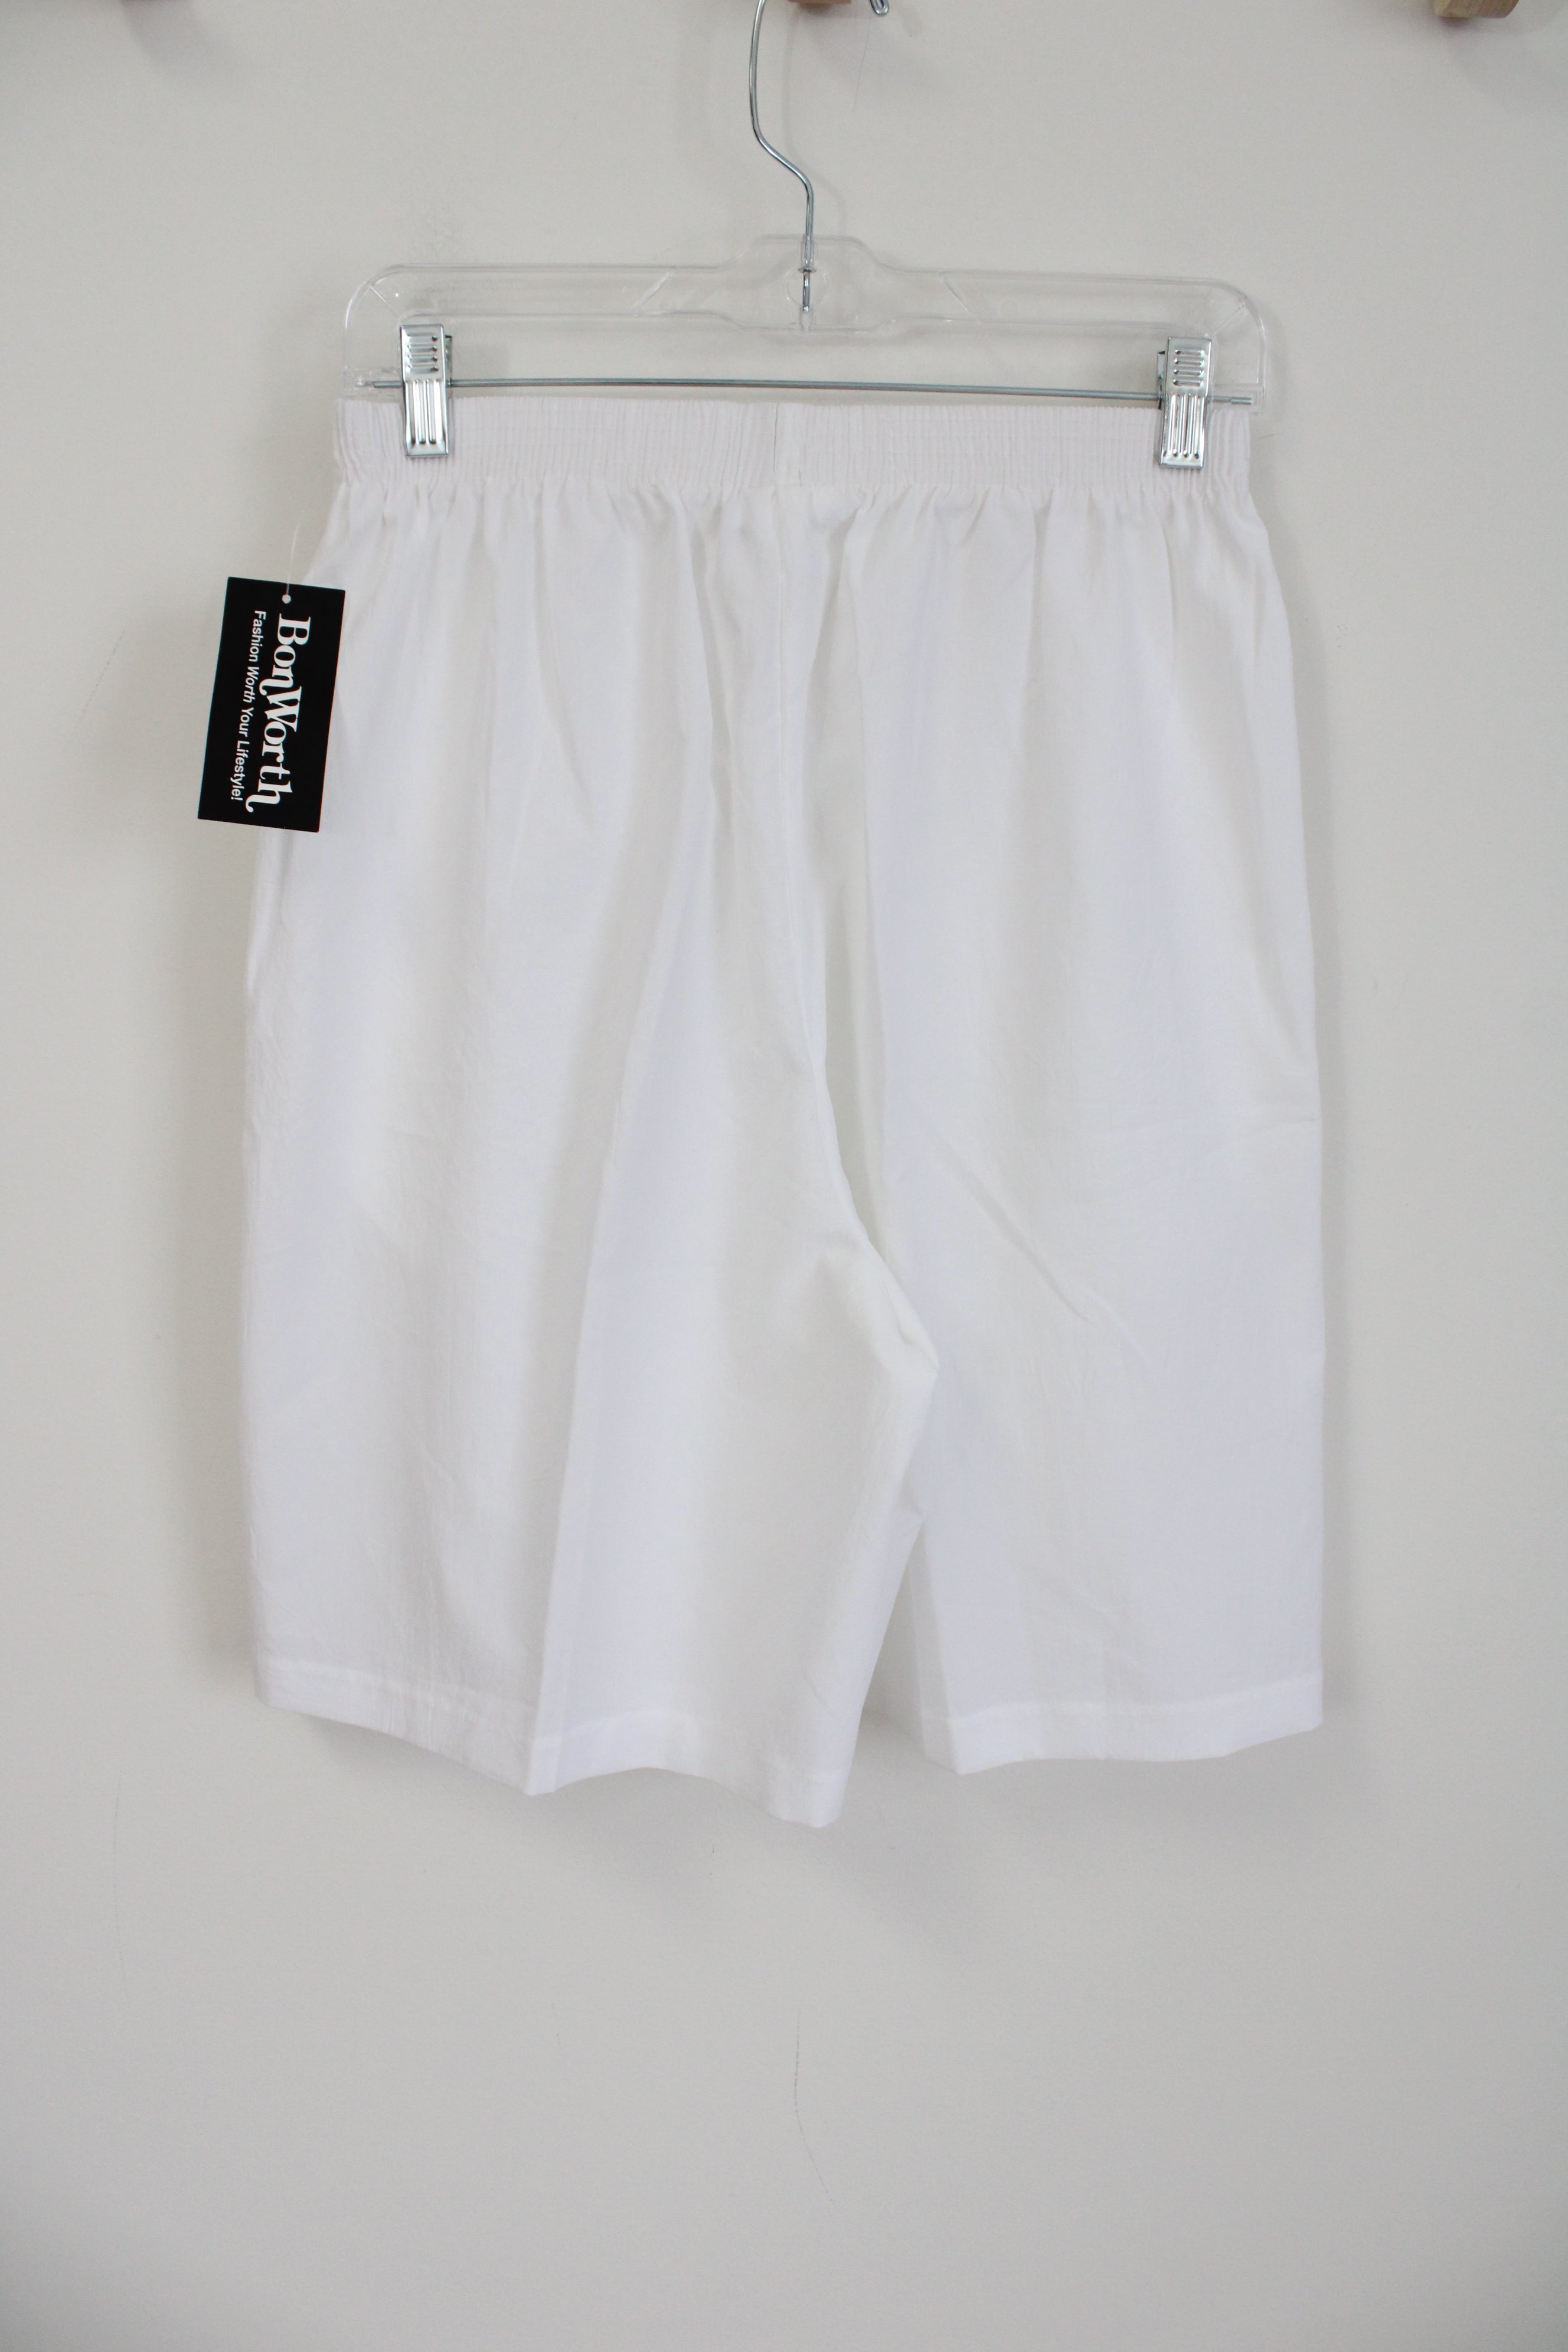 NEW Bonworth White Polyester Shorts | M